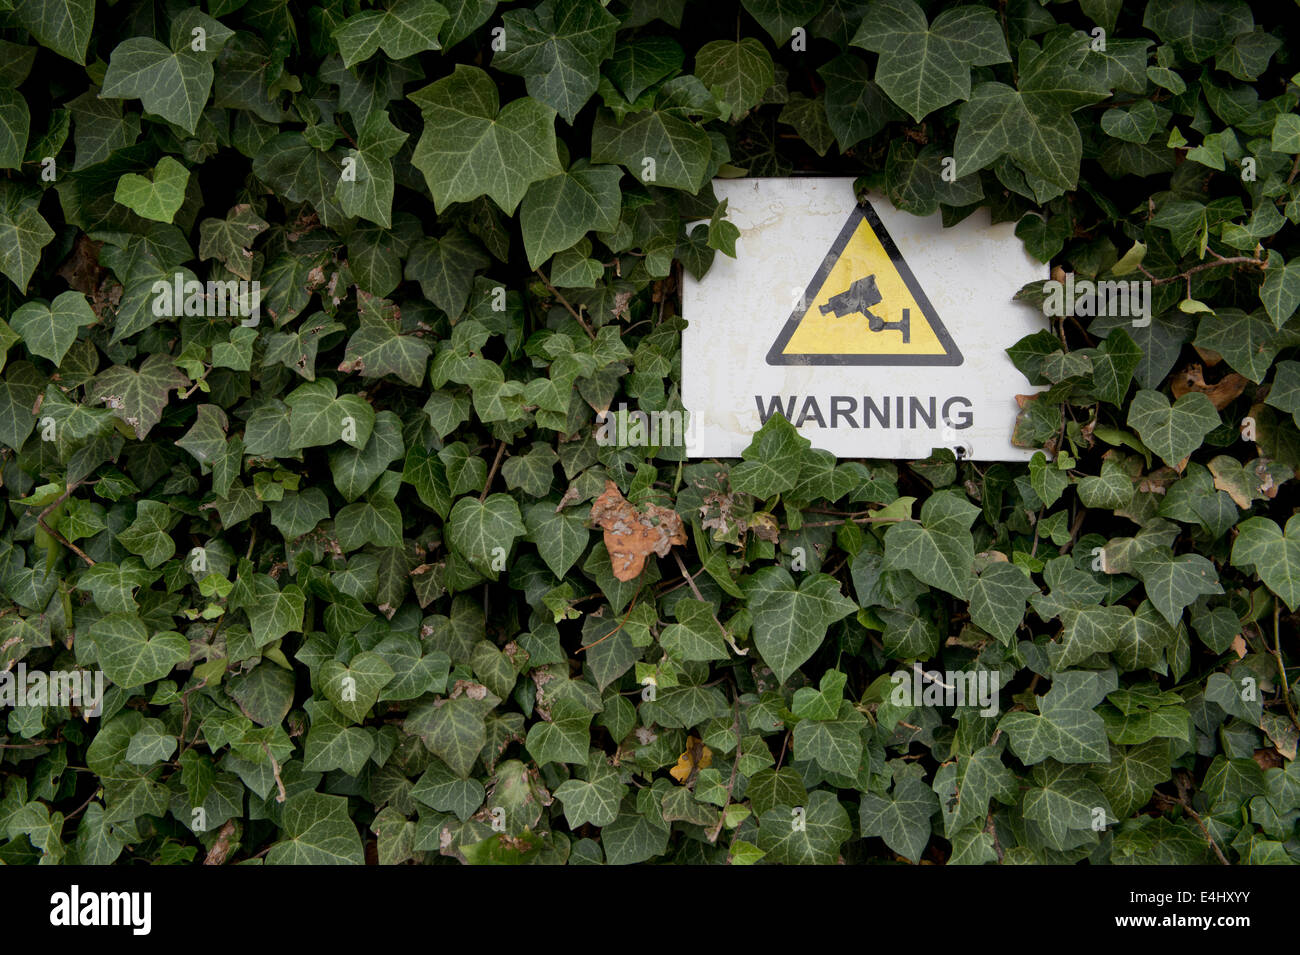 Un segnale di avvertimento per indicare che è TVCC in operazione in parzialmente nascosto dietro alcune foglie di Manchester, UK. Foto Stock